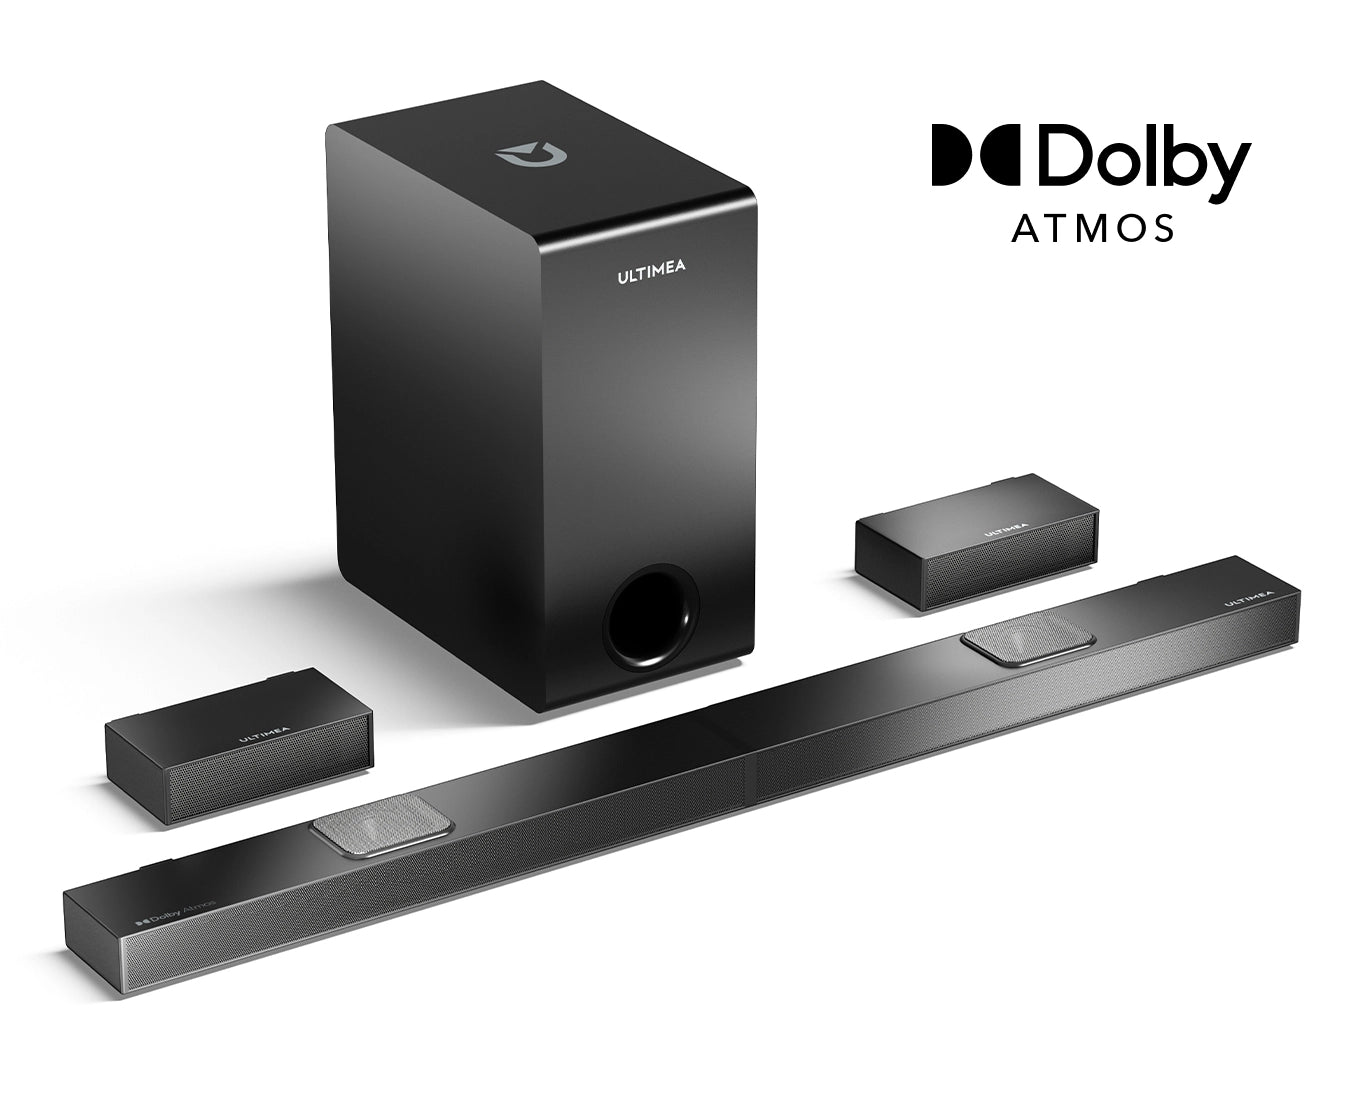 ULTIMEA Nova S80 | 5.1.2 Dolby Atmos Soundbar with 520W Peak